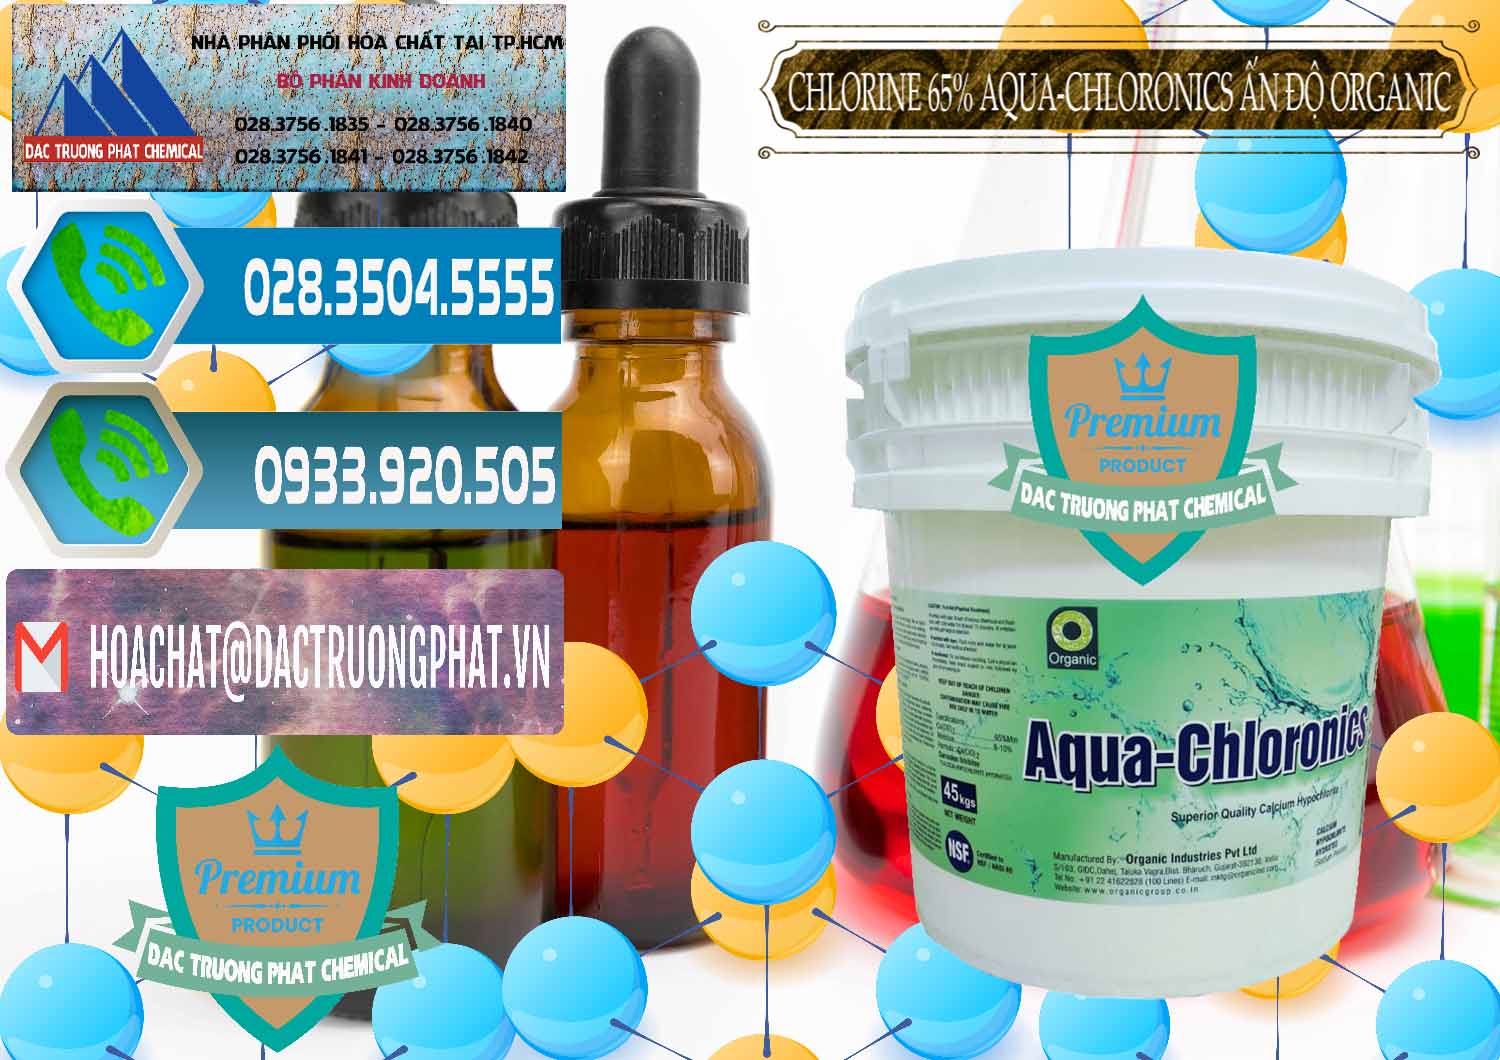 Công ty chuyên cung cấp ( bán ) Chlorine – Clorin 65% Aqua-Chloronics Ấn Độ Organic India - 0210 - Nơi chuyên nhập khẩu - phân phối hóa chất tại TP.HCM - congtyhoachat.net